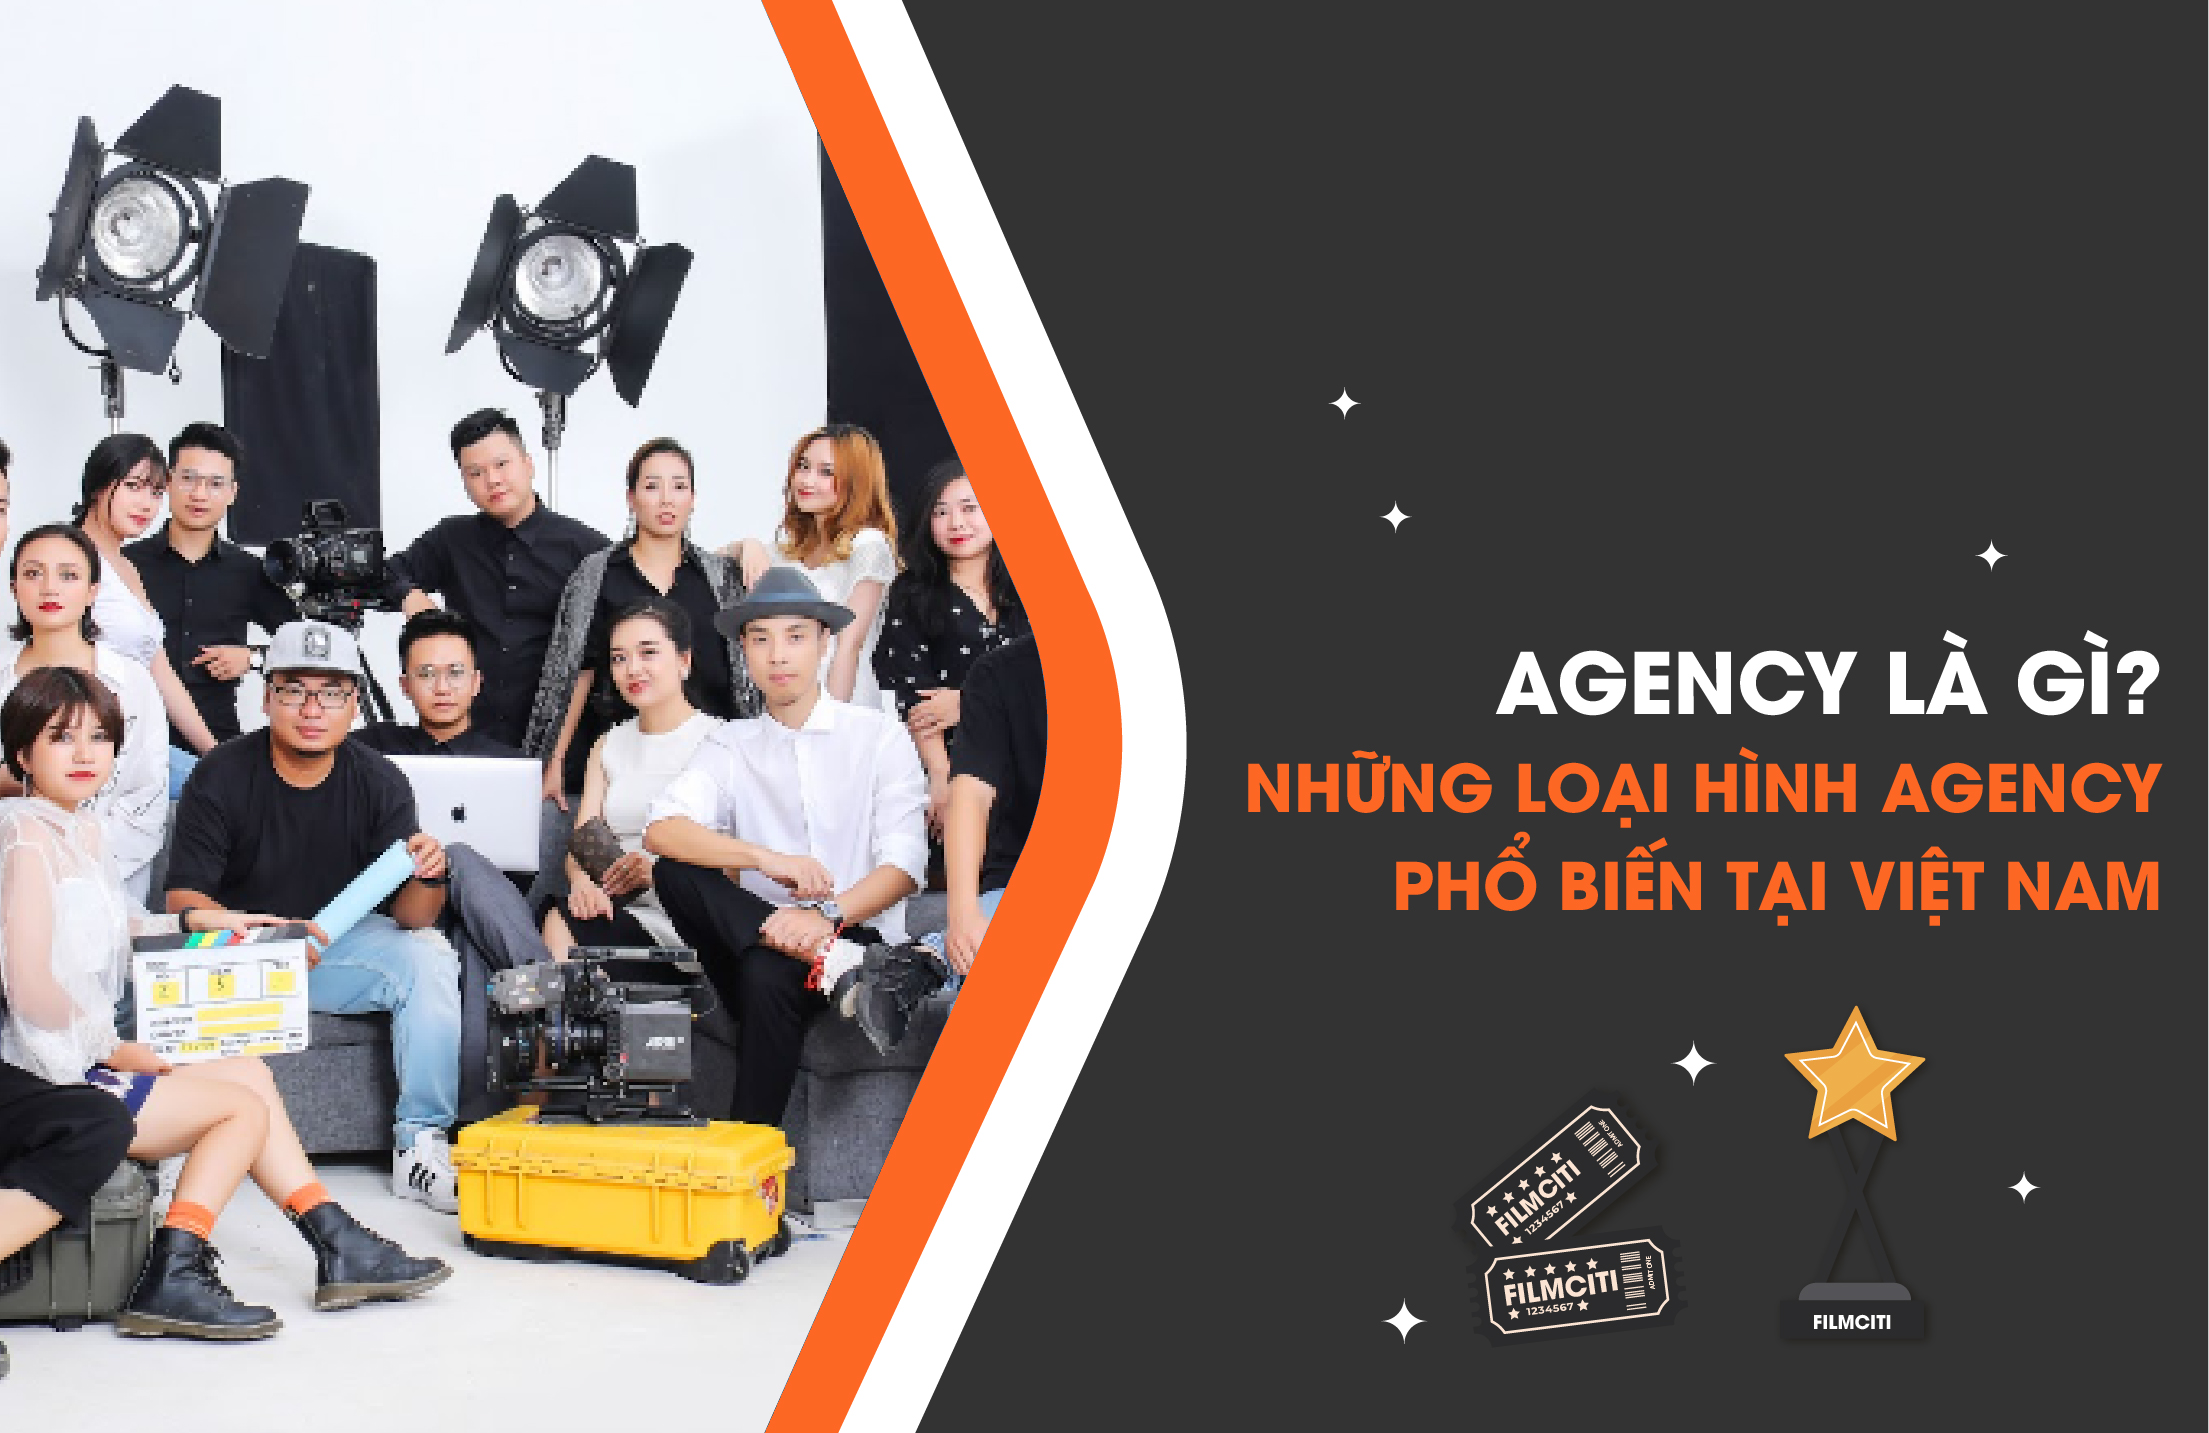 Agency Là Gì? Những Loại Hình Agency Phổ Biến Tại Việt Nam